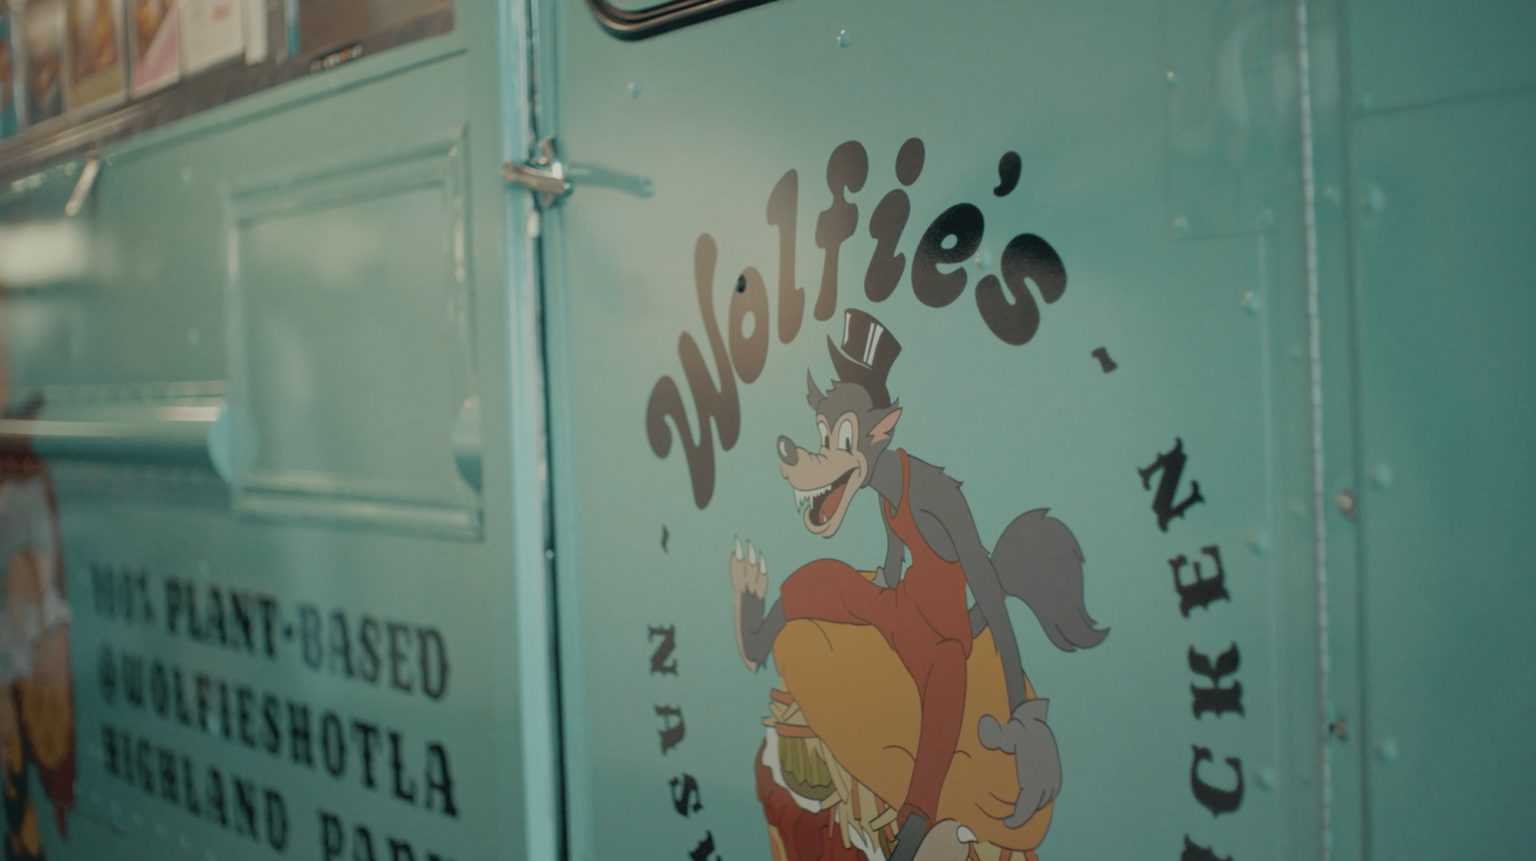 The door of Woflie’s Nashville Hot Chicken food truck.